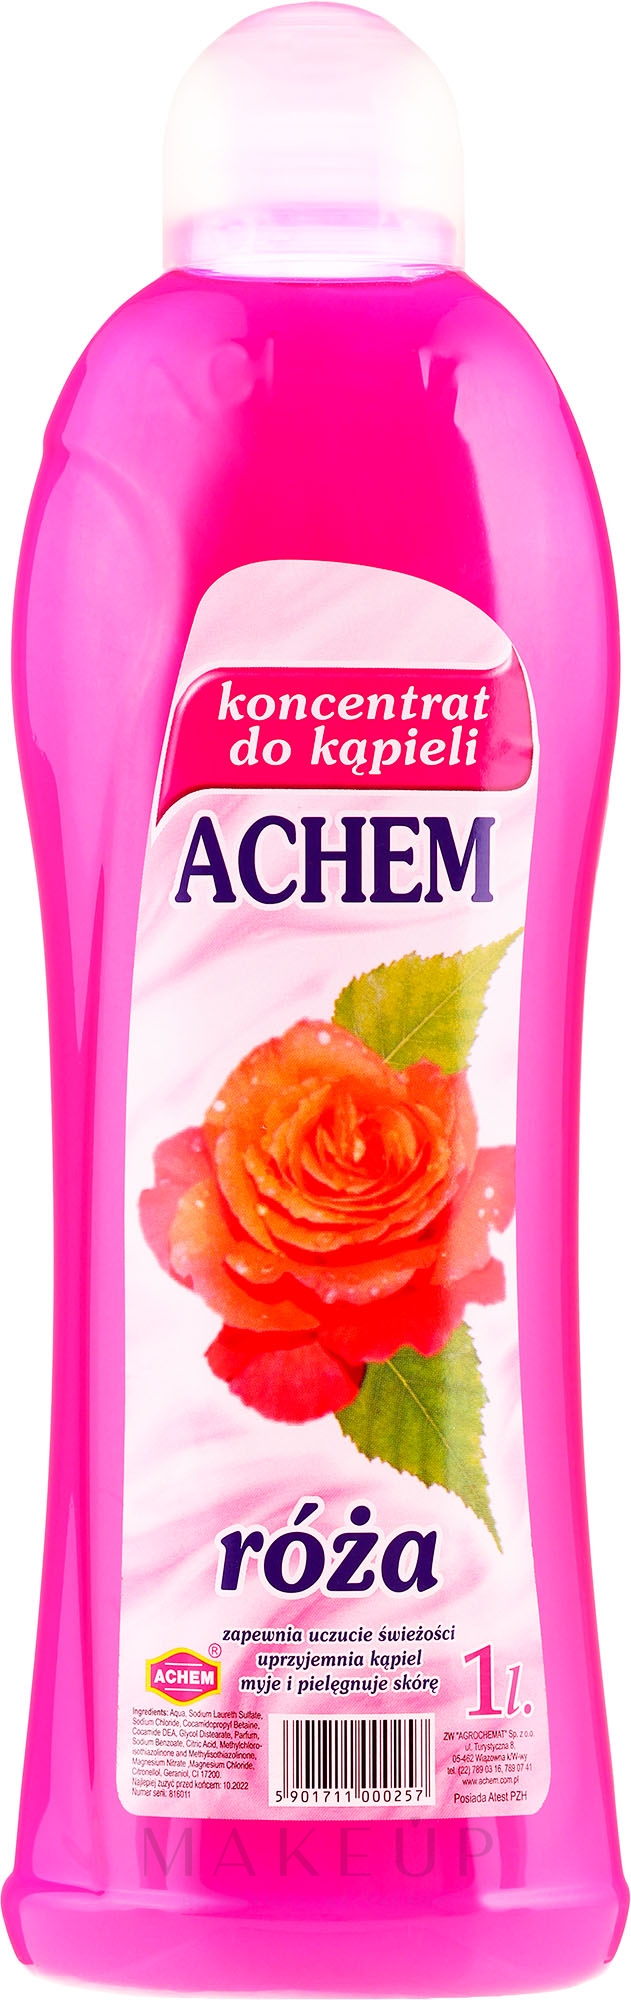 Badekonzentrat mit Rose - Achem Concentrated Bubble Bath Rose — Foto 1000 ml